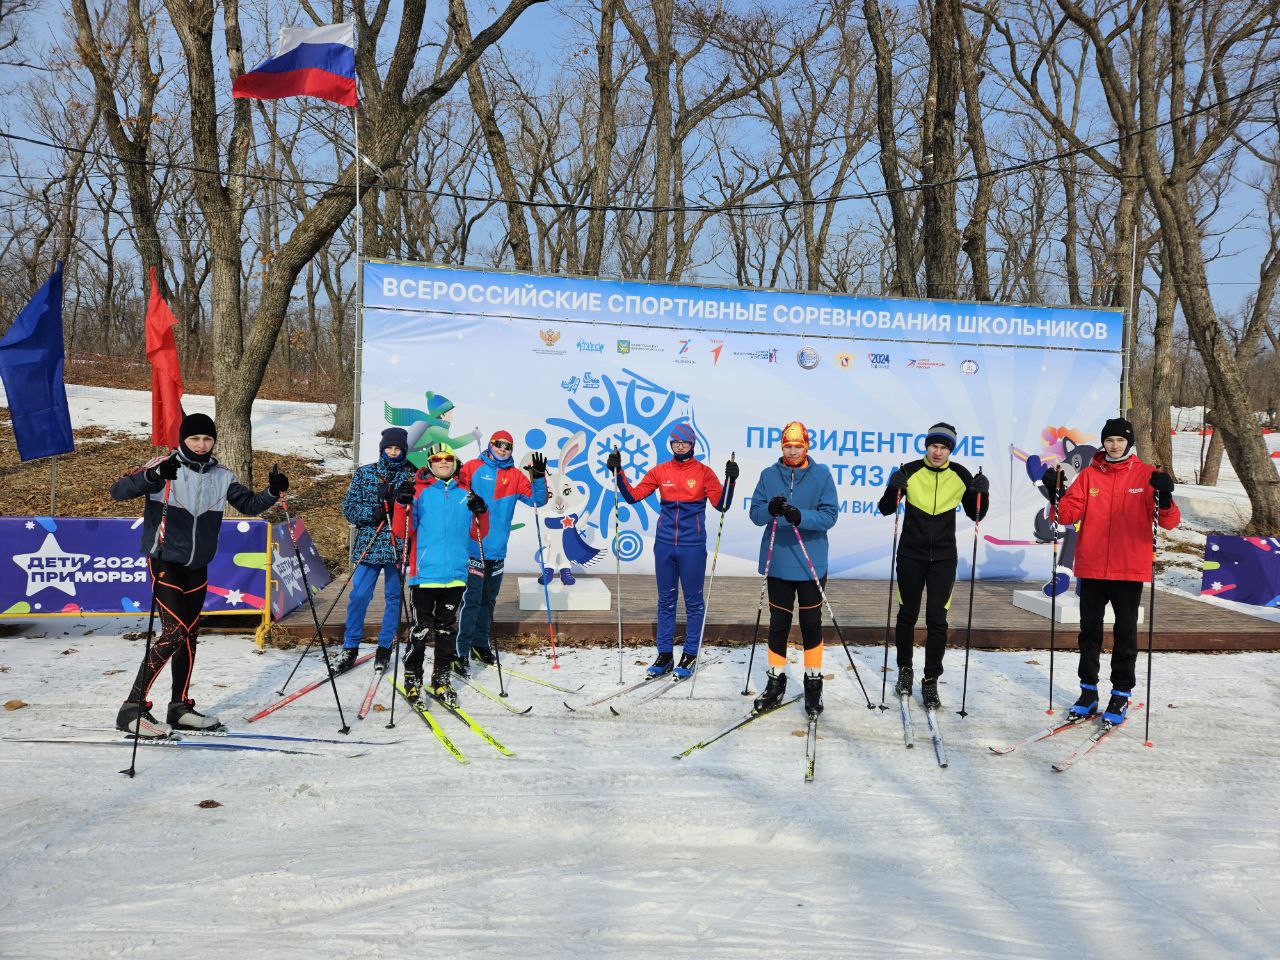 Во Всероссийском детском центре «Океан» проходит финальный этап первых Всероссийских спортивных соревнований школьников «Президентские состязания по зимним видам спорта»